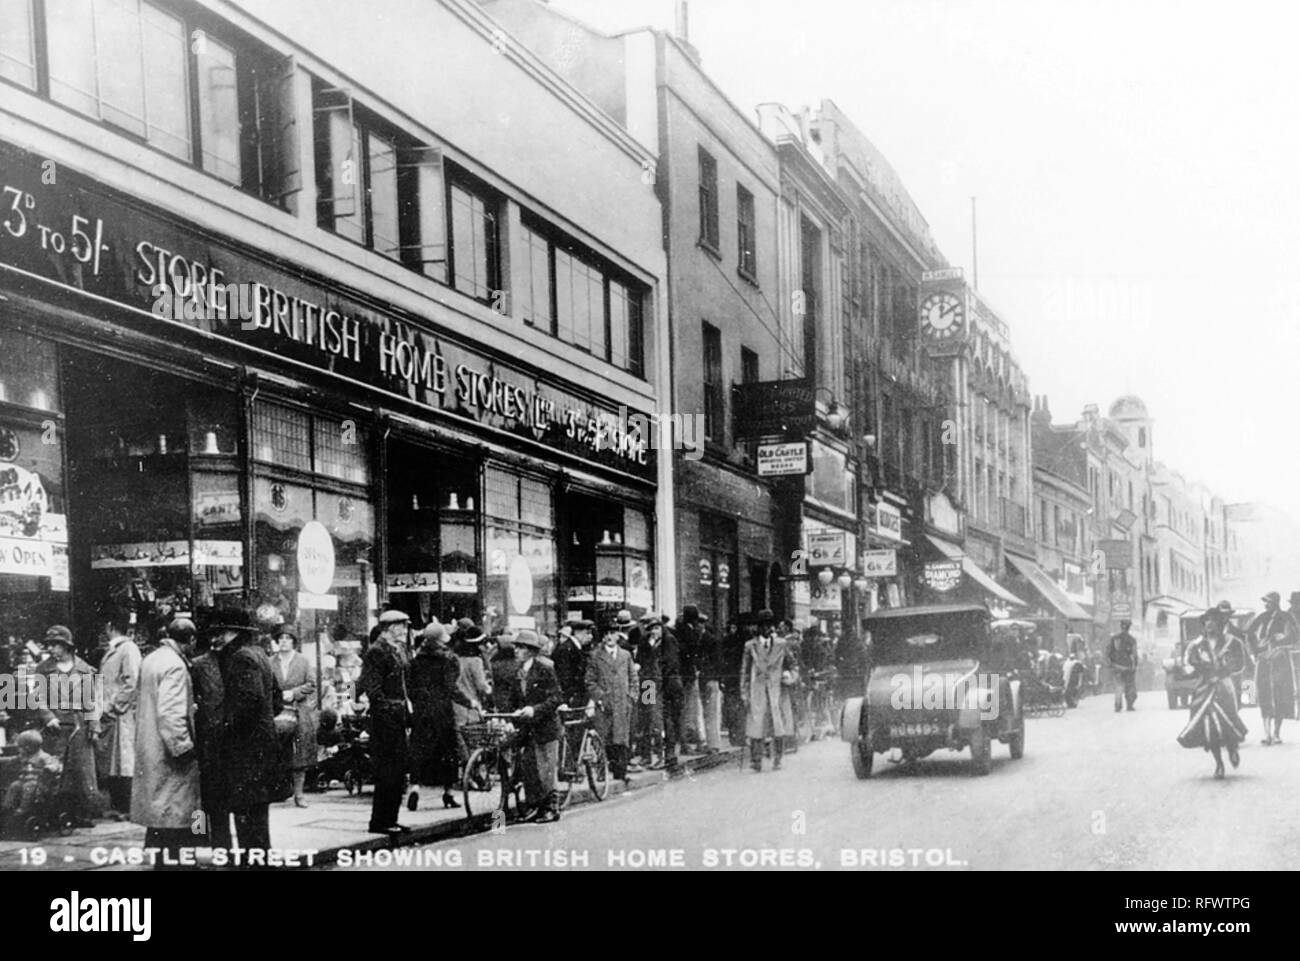 CASTLE Street, BRISTOL, vers 1925 avec un British Home Stores Department Store à gauche Banque D'Images